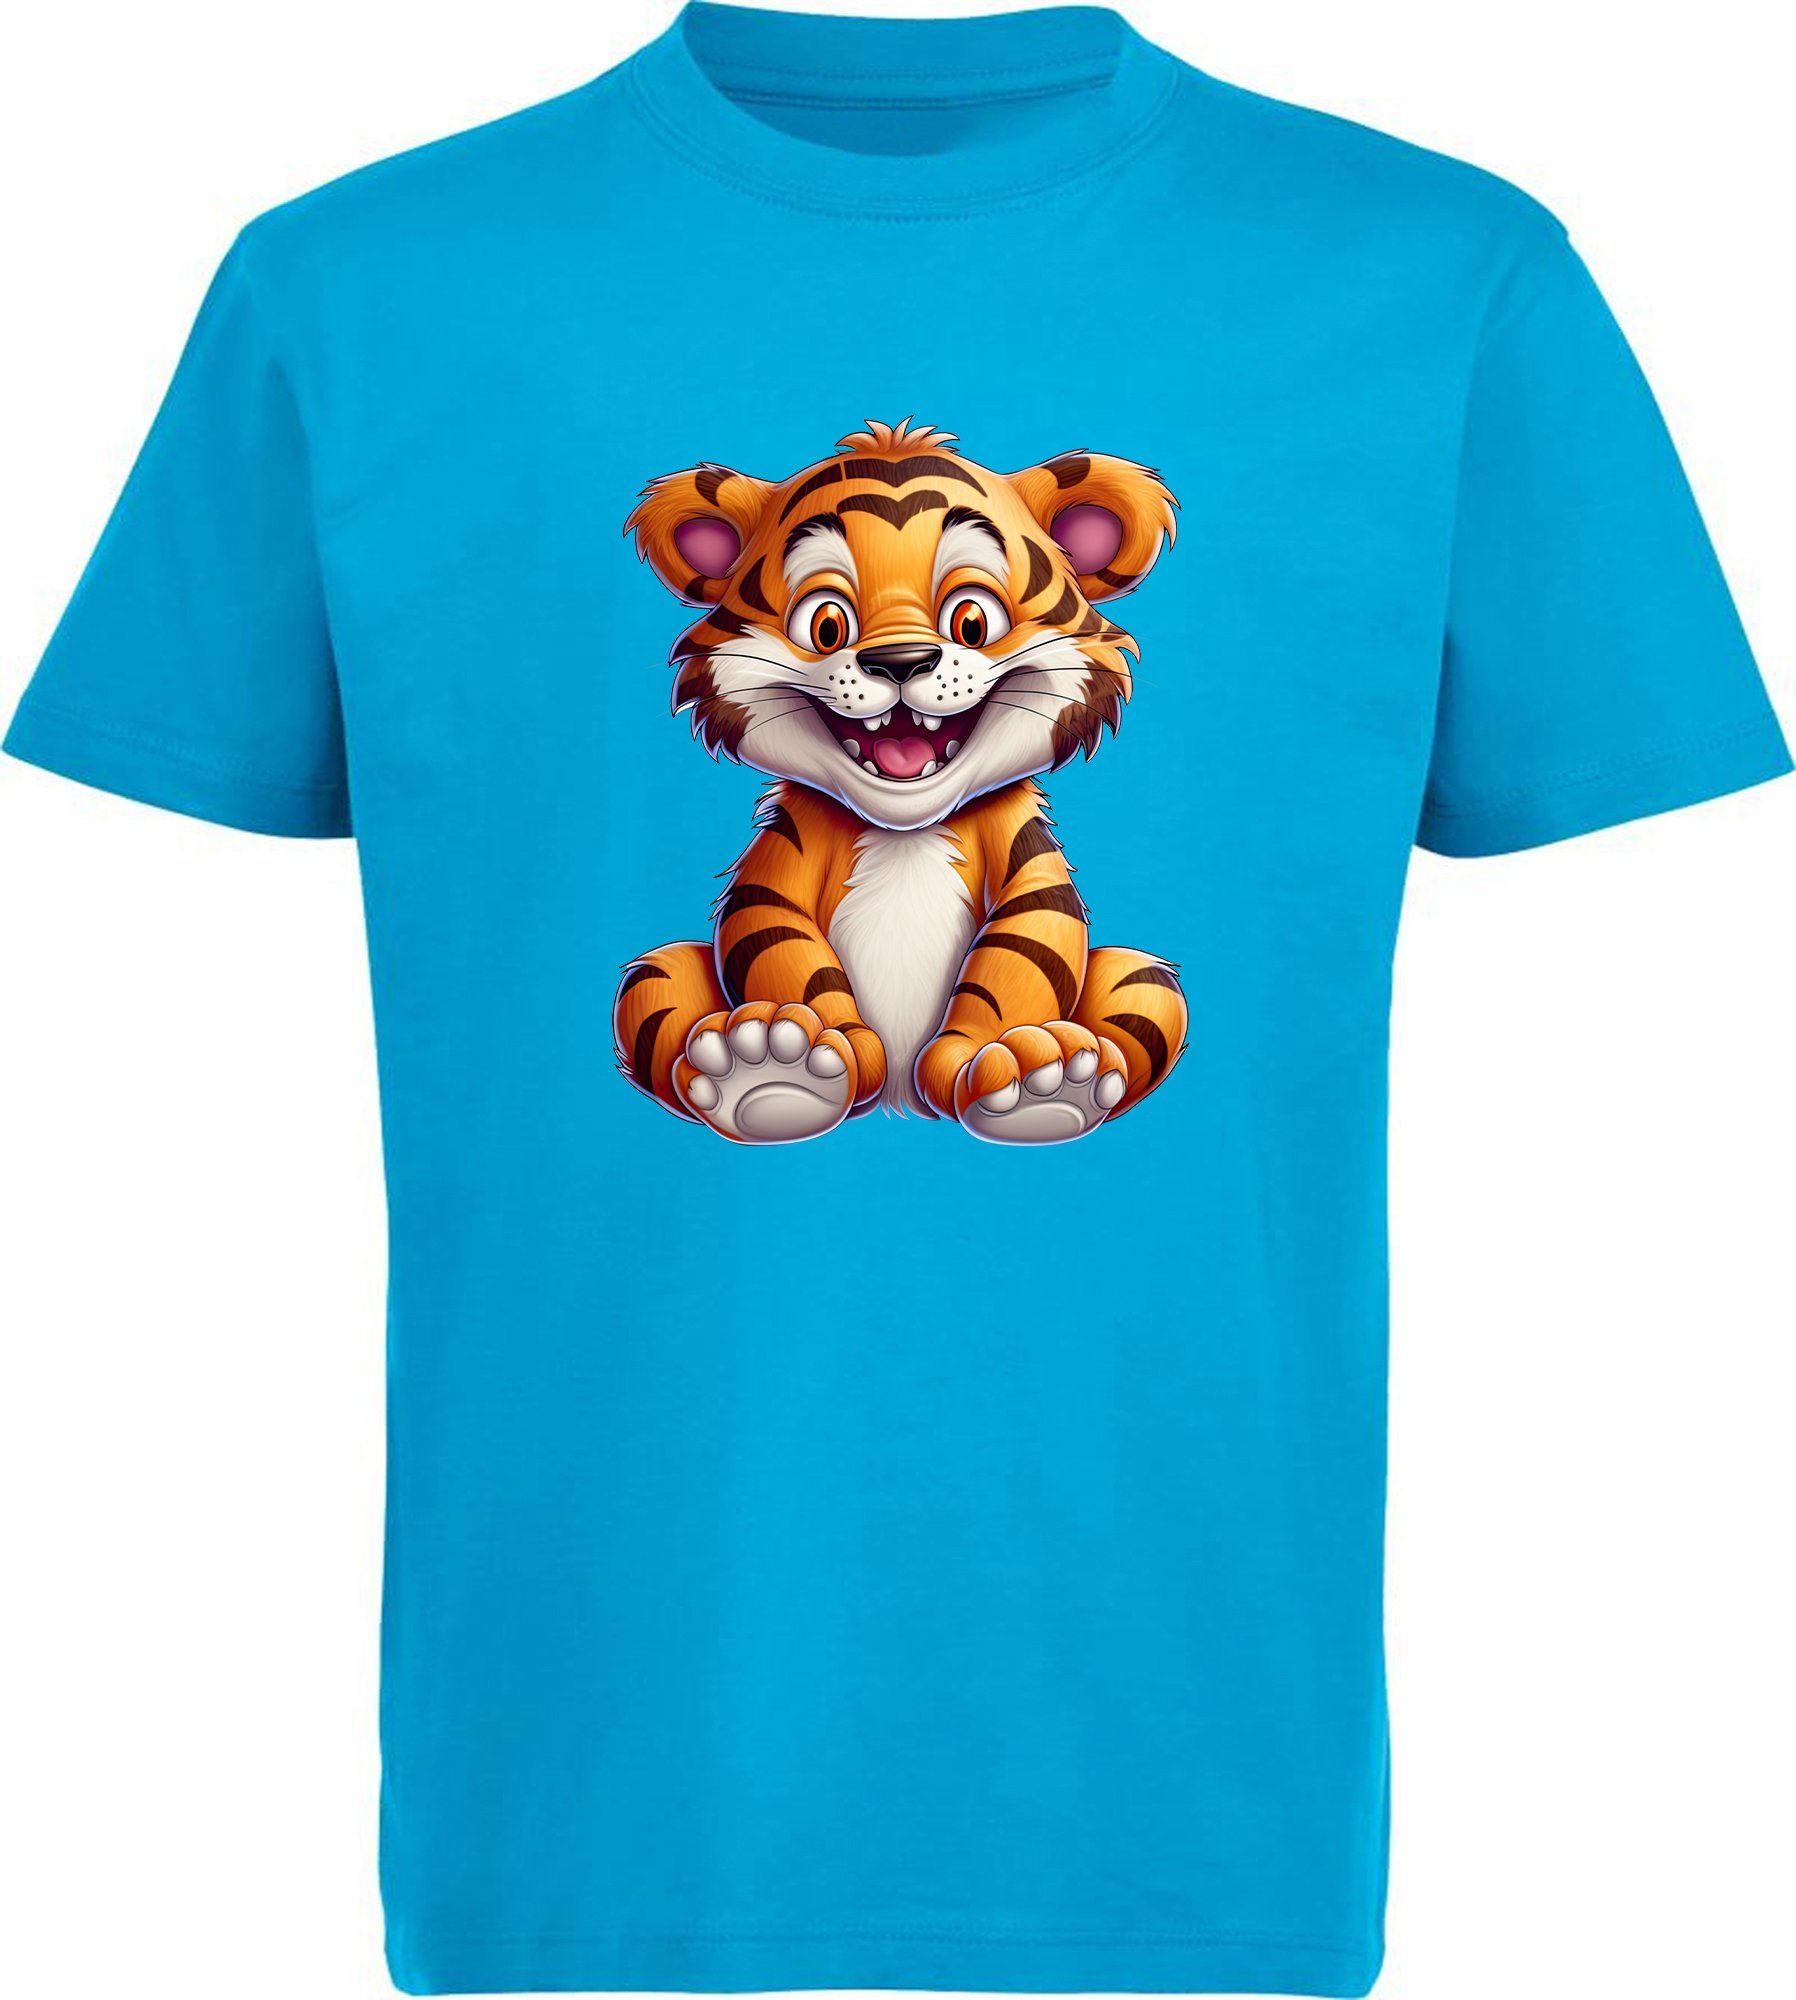 MyDesign24 T-Shirt Kinder Wildtier Print Shirt bedruckt - Baby Tiger Baumwollshirt mit Aufdruck, i278 aqua blau